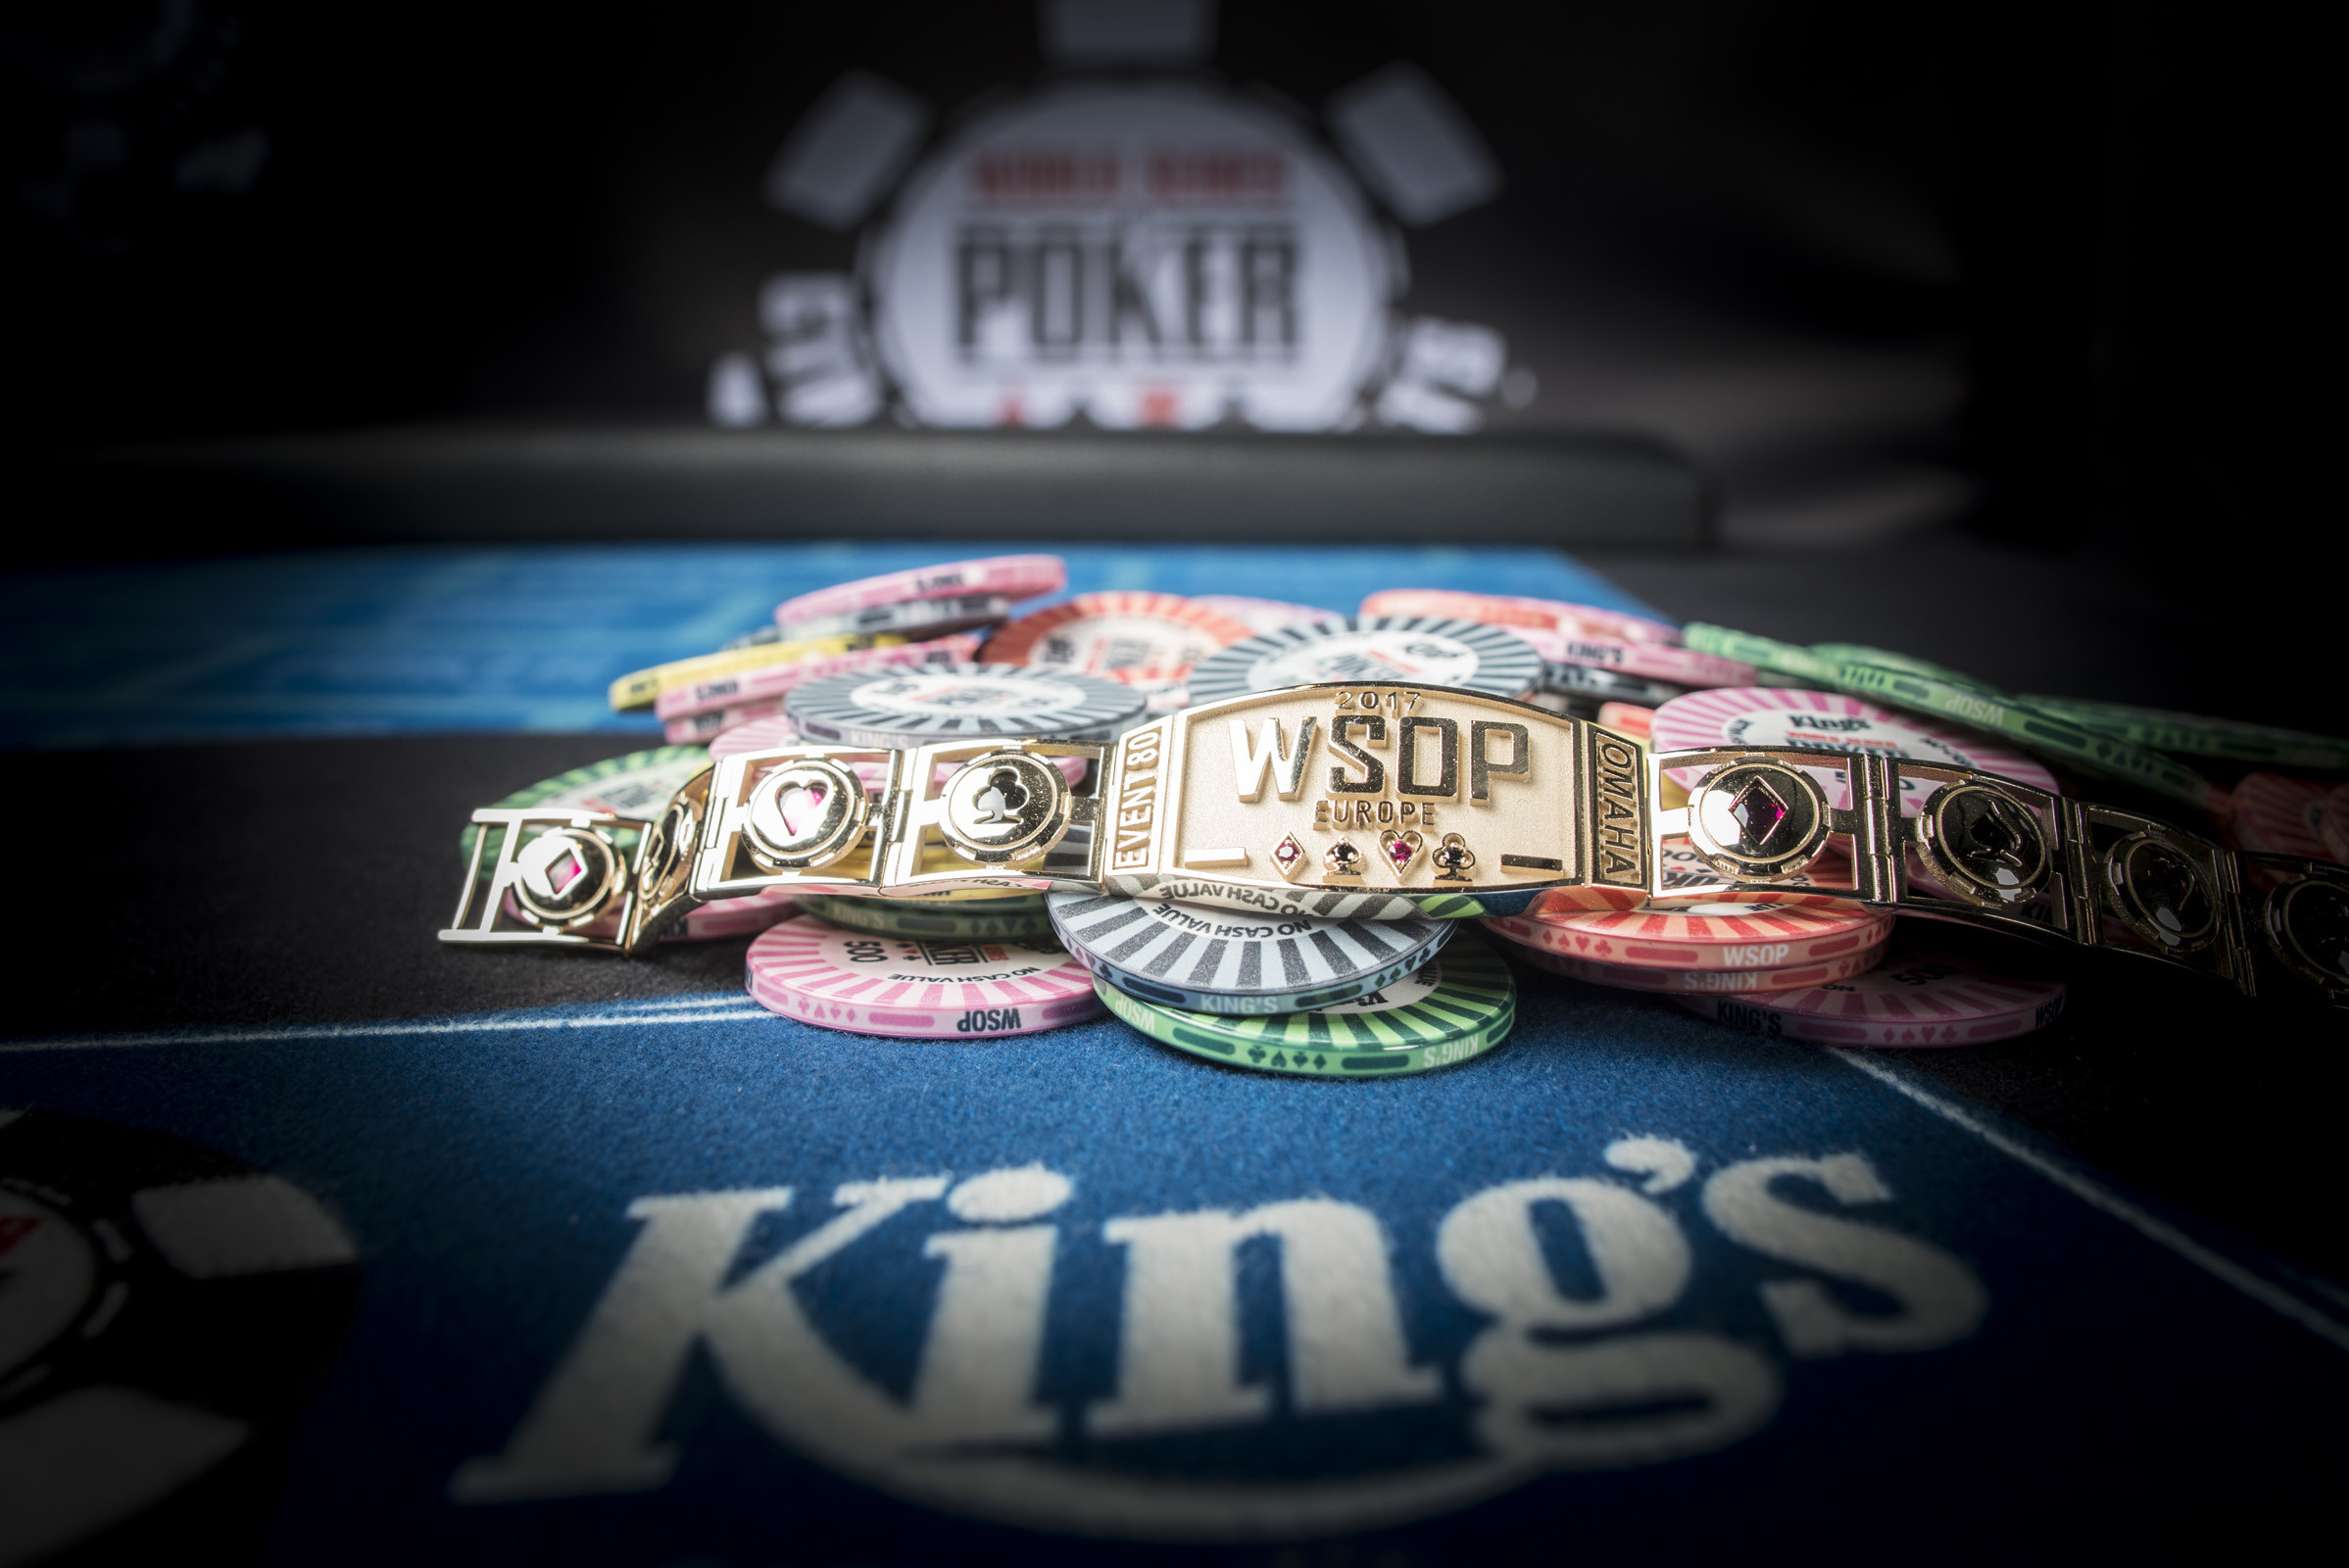 HPT poker custom champion chain award | News | Championship Chains